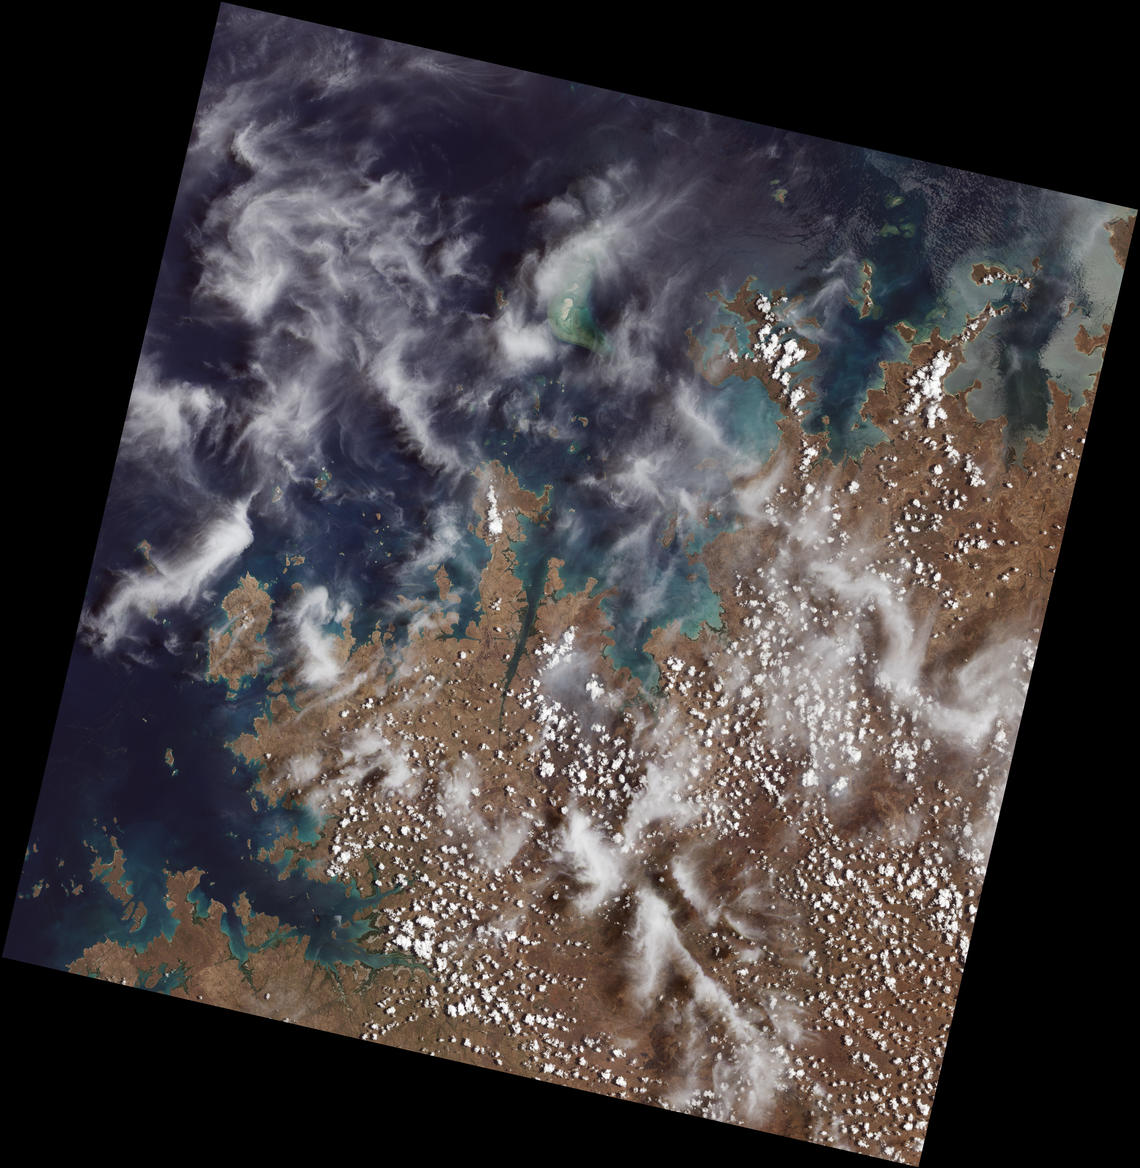 Landsat 9 first light image"